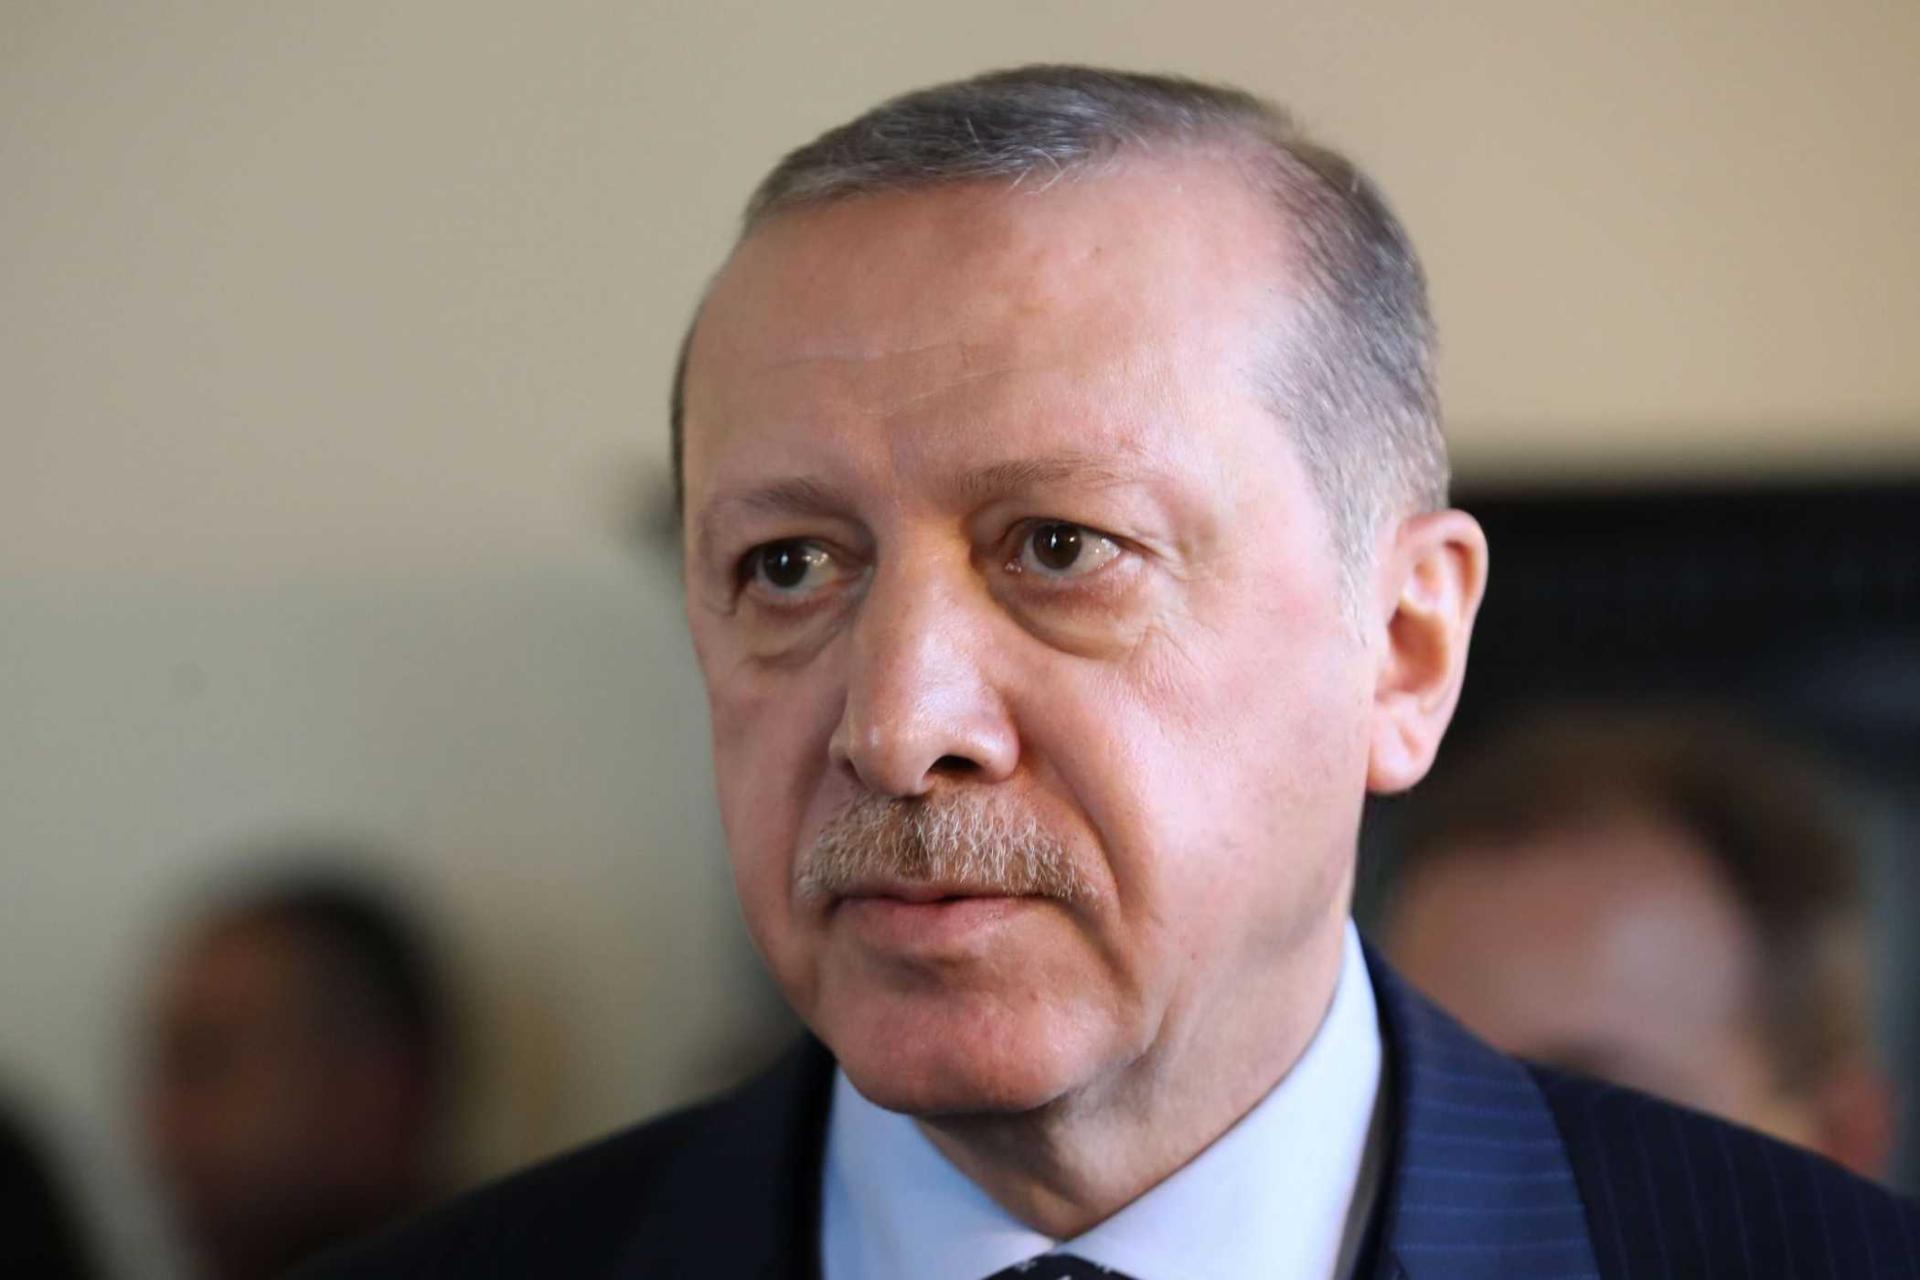 Турция готова внести вклад в снижение напряженности между Россией и Украиной - Реджеп Тайип Эрдоган